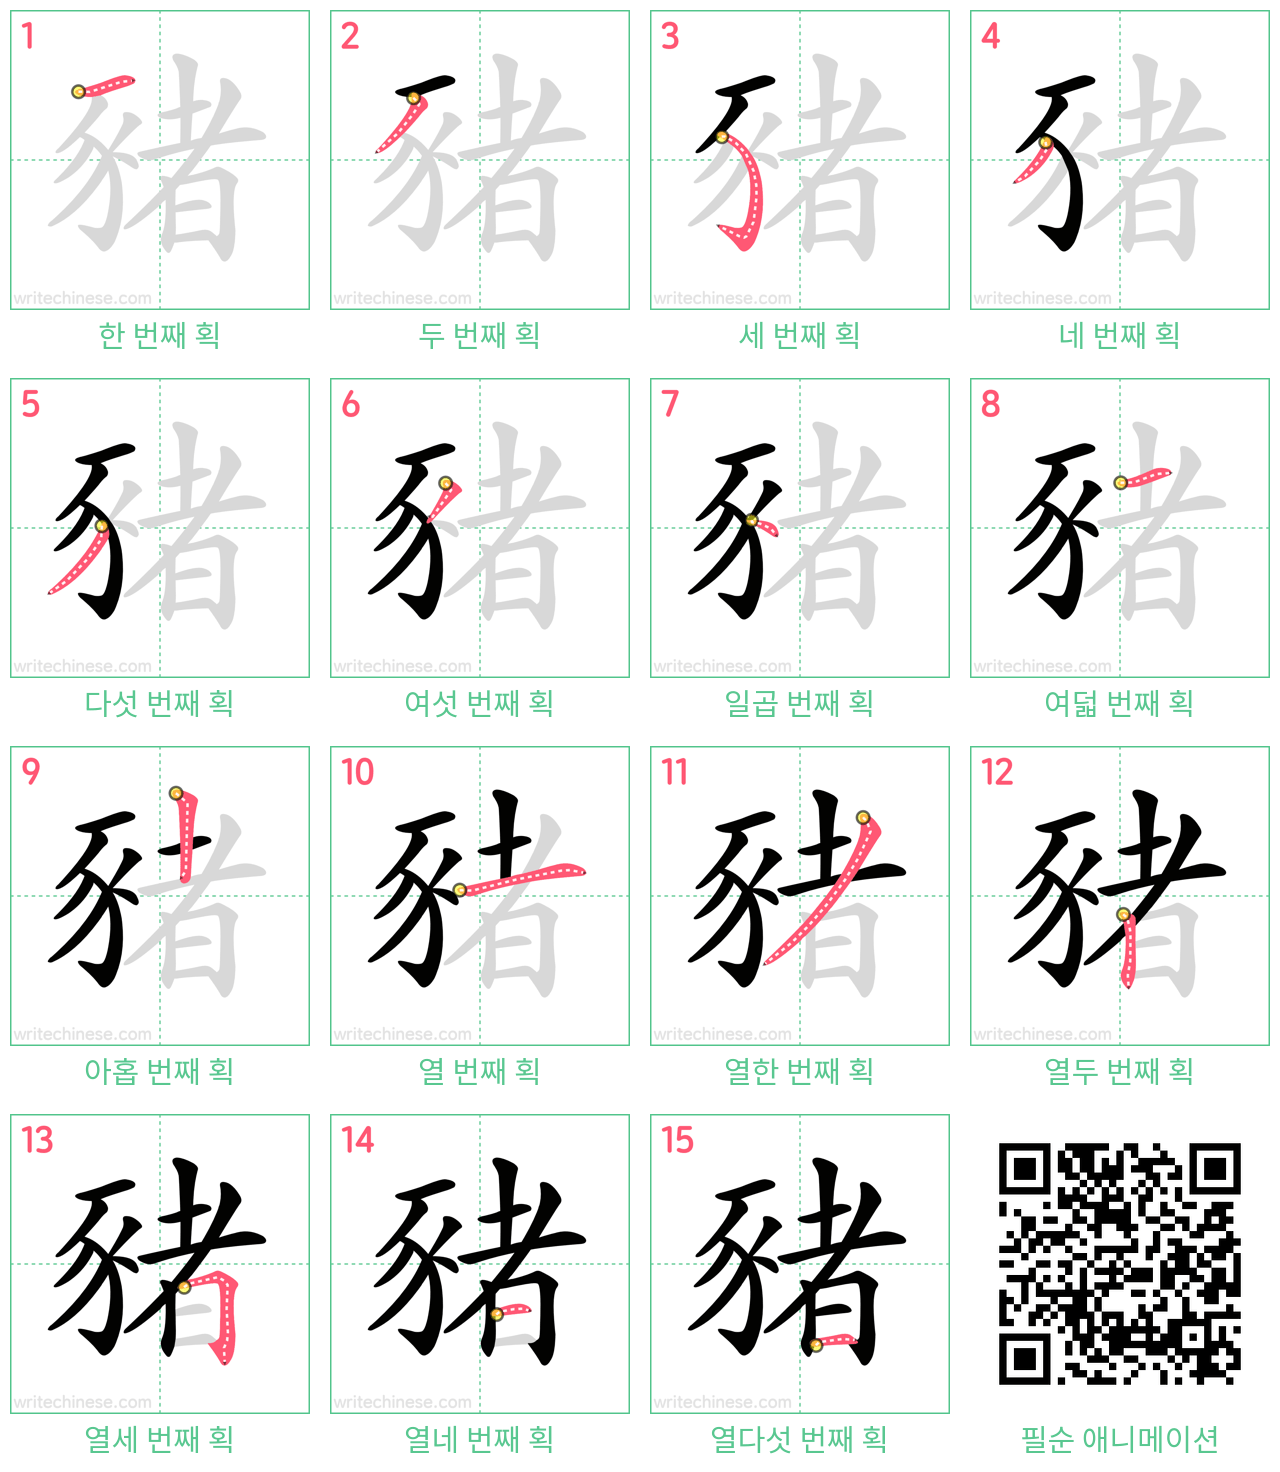 豬 step-by-step stroke order diagrams